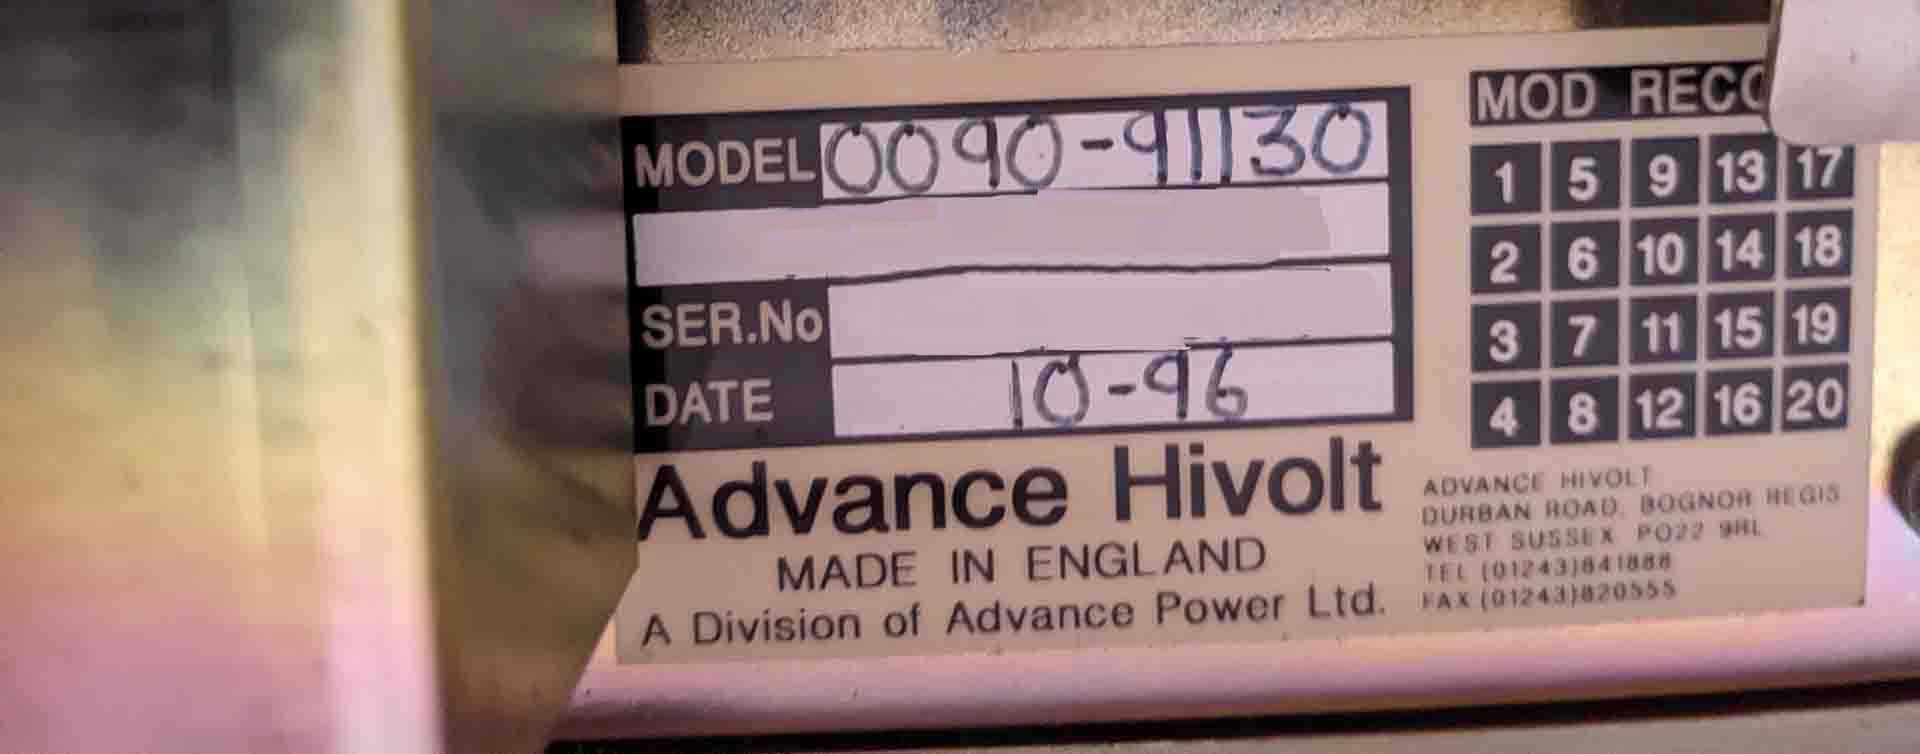 圖為 已使用的 ADVANCE HIVOLT 0090-91130 待售